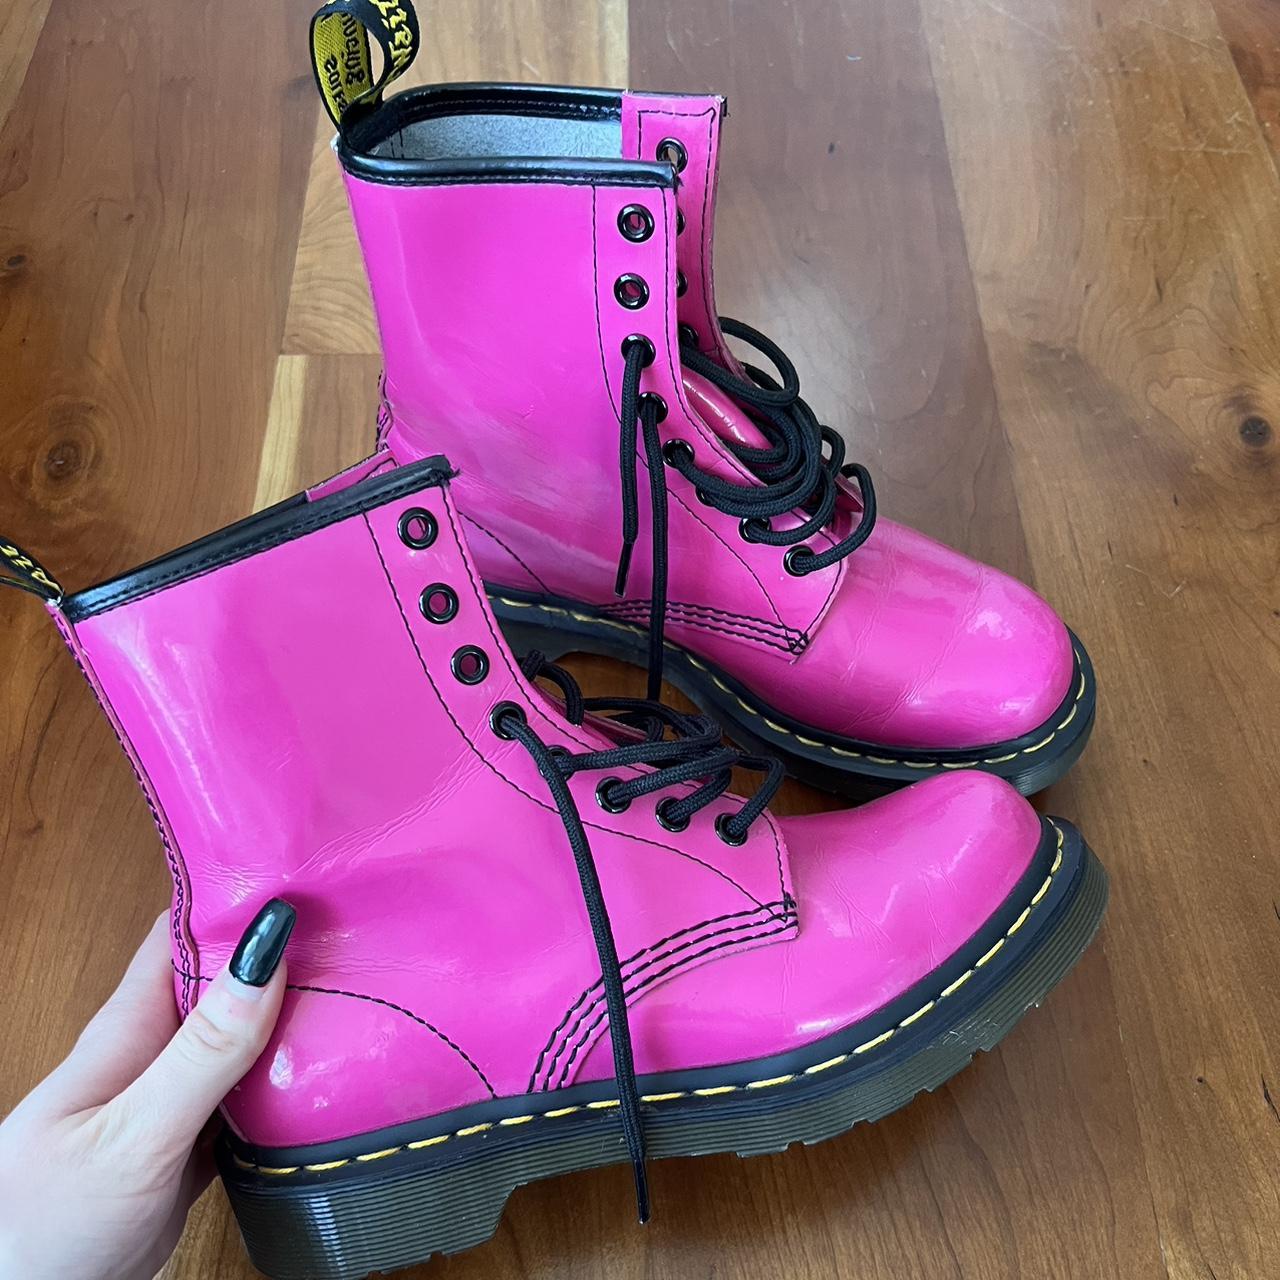 Dr. Martens Women's Pink Boots | Depop